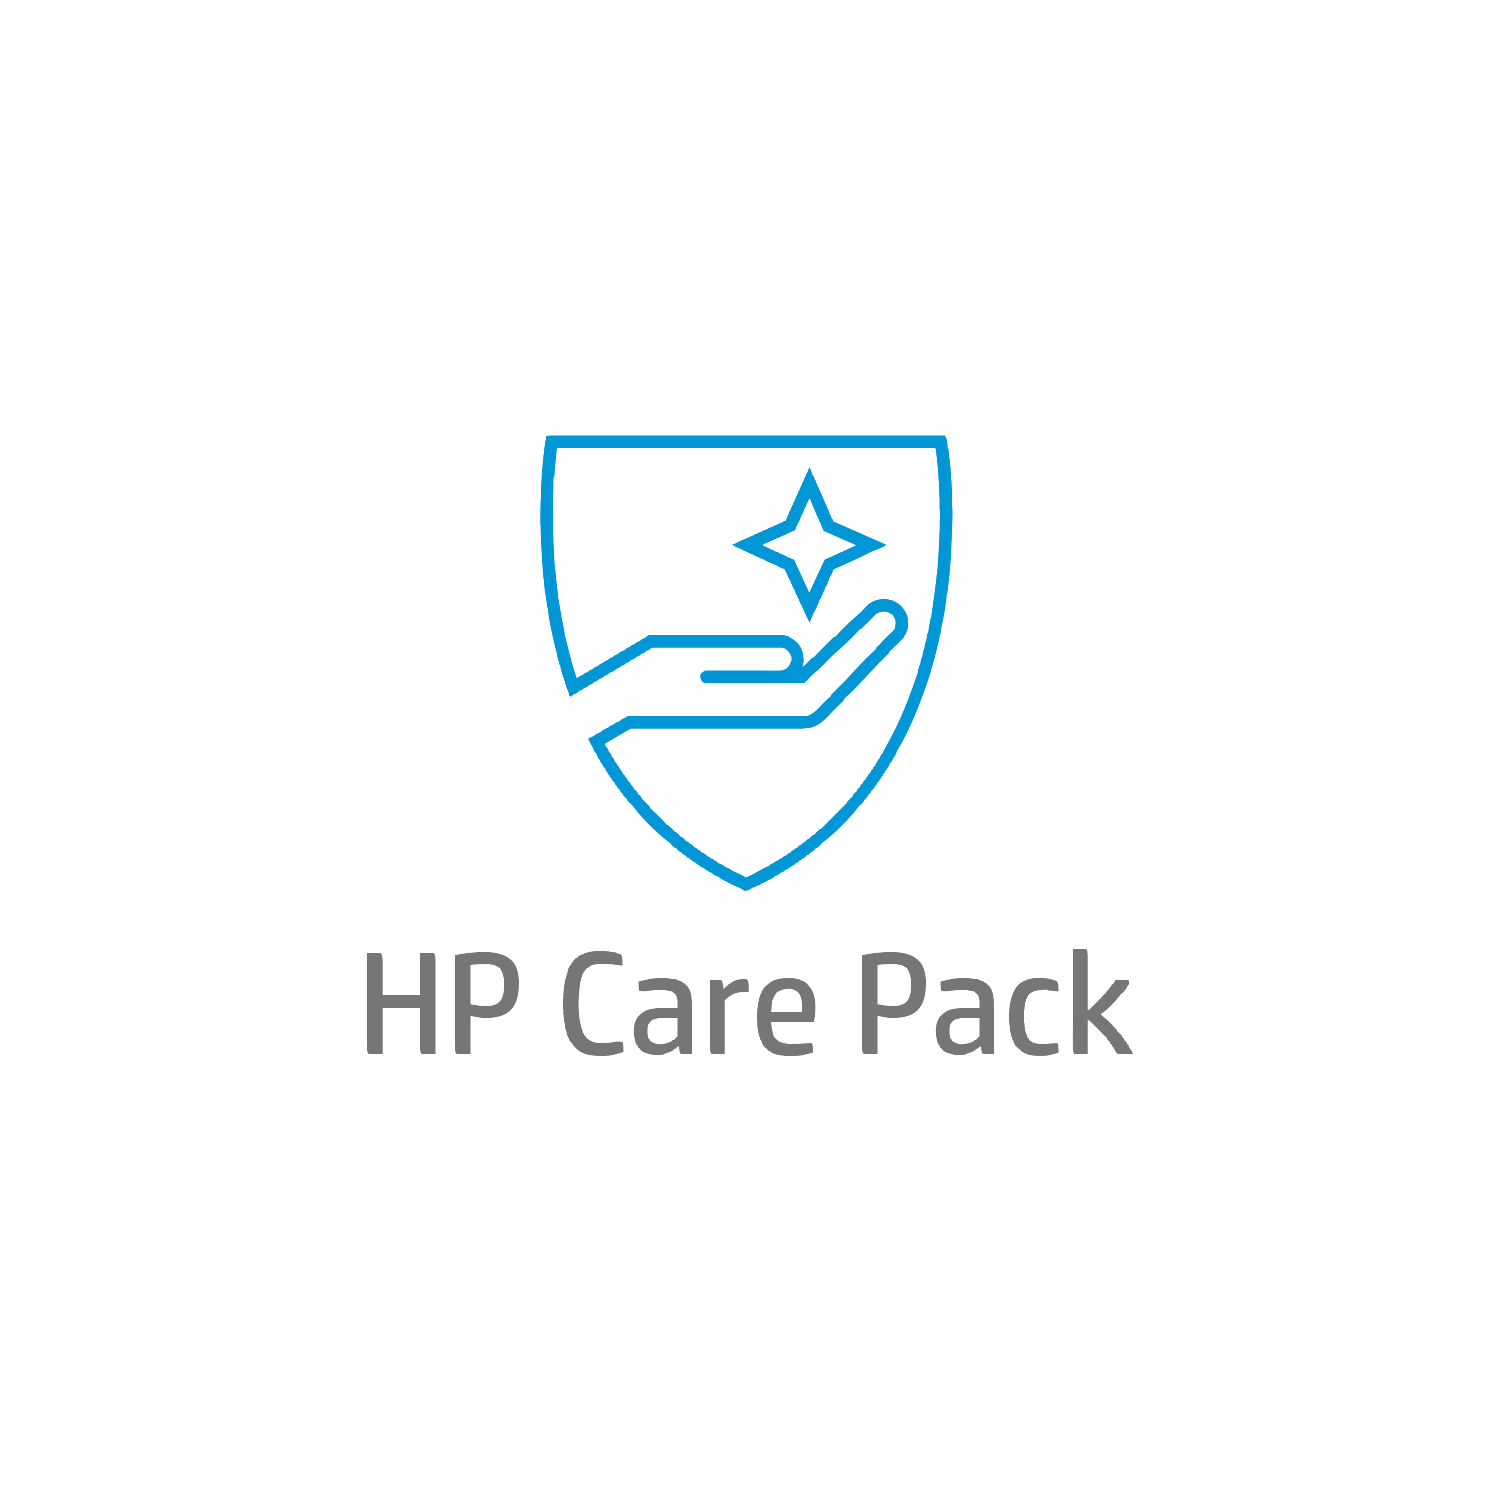 Bild von HP Care 5 Jahre Solution-Support mit Einbehaltung defekter Medien für Mobile Workstations - Externe Reparatur - Außerhalb des Kundenstandorts - Unter Garantie - Standardarbeitstage - 9 Stunden - 5 Jahre - Reparatur innerhalb von 3–7 Werktagen